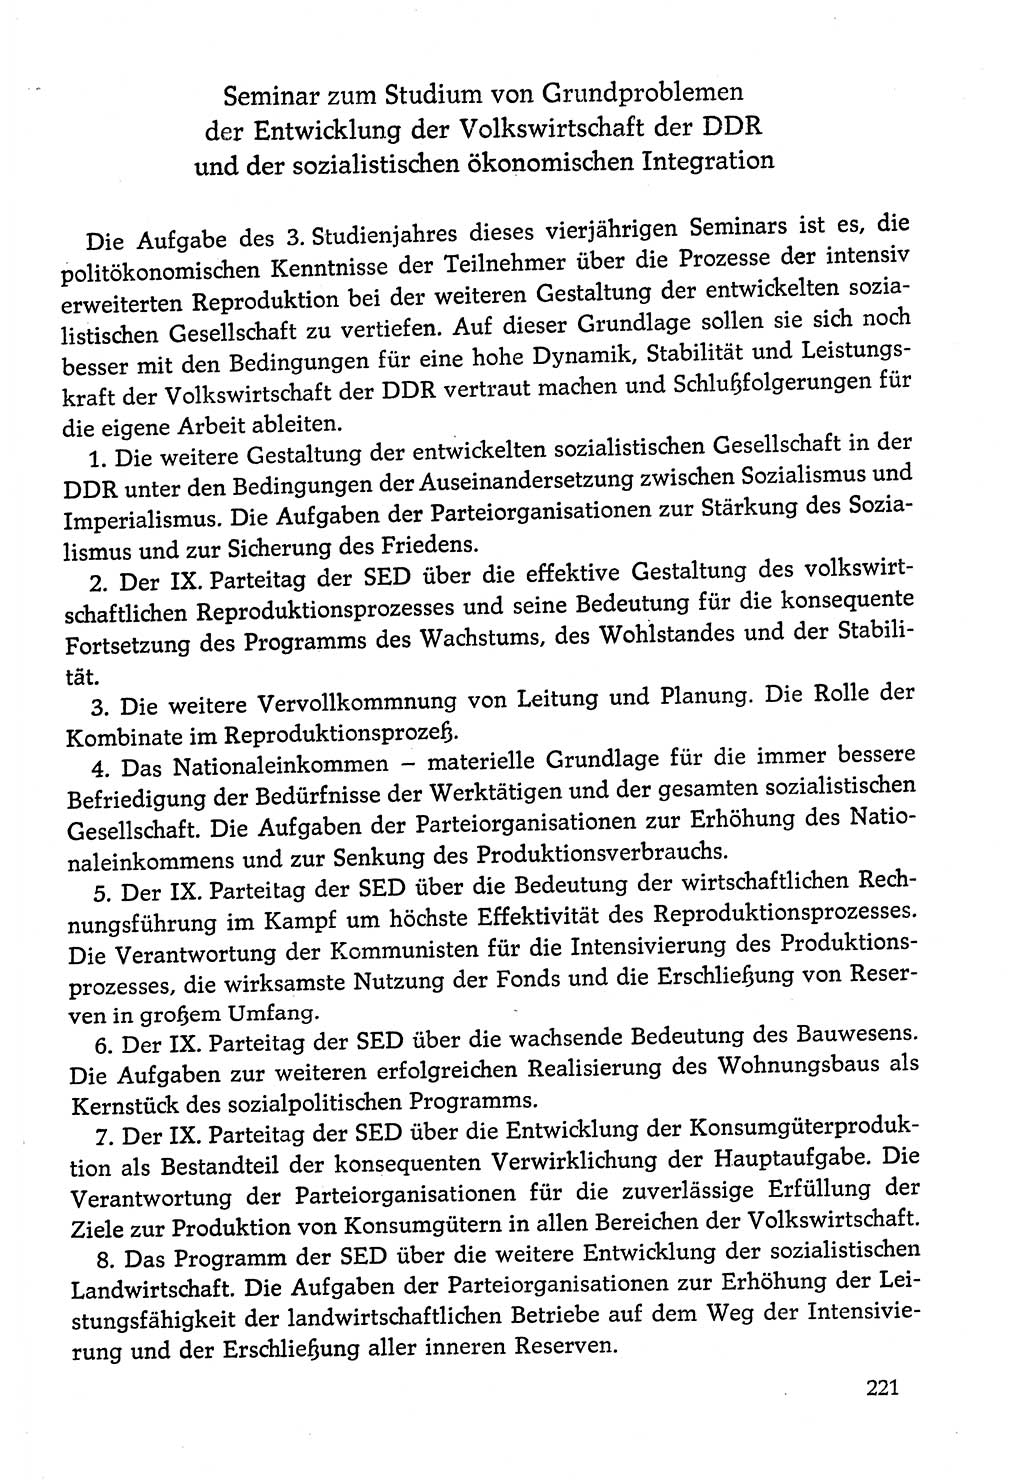 Dokumente der Sozialistischen Einheitspartei Deutschlands (SED) [Deutsche Demokratische Republik (DDR)] 1978-1979, Seite 221 (Dok. SED DDR 1978-1979, S. 221)